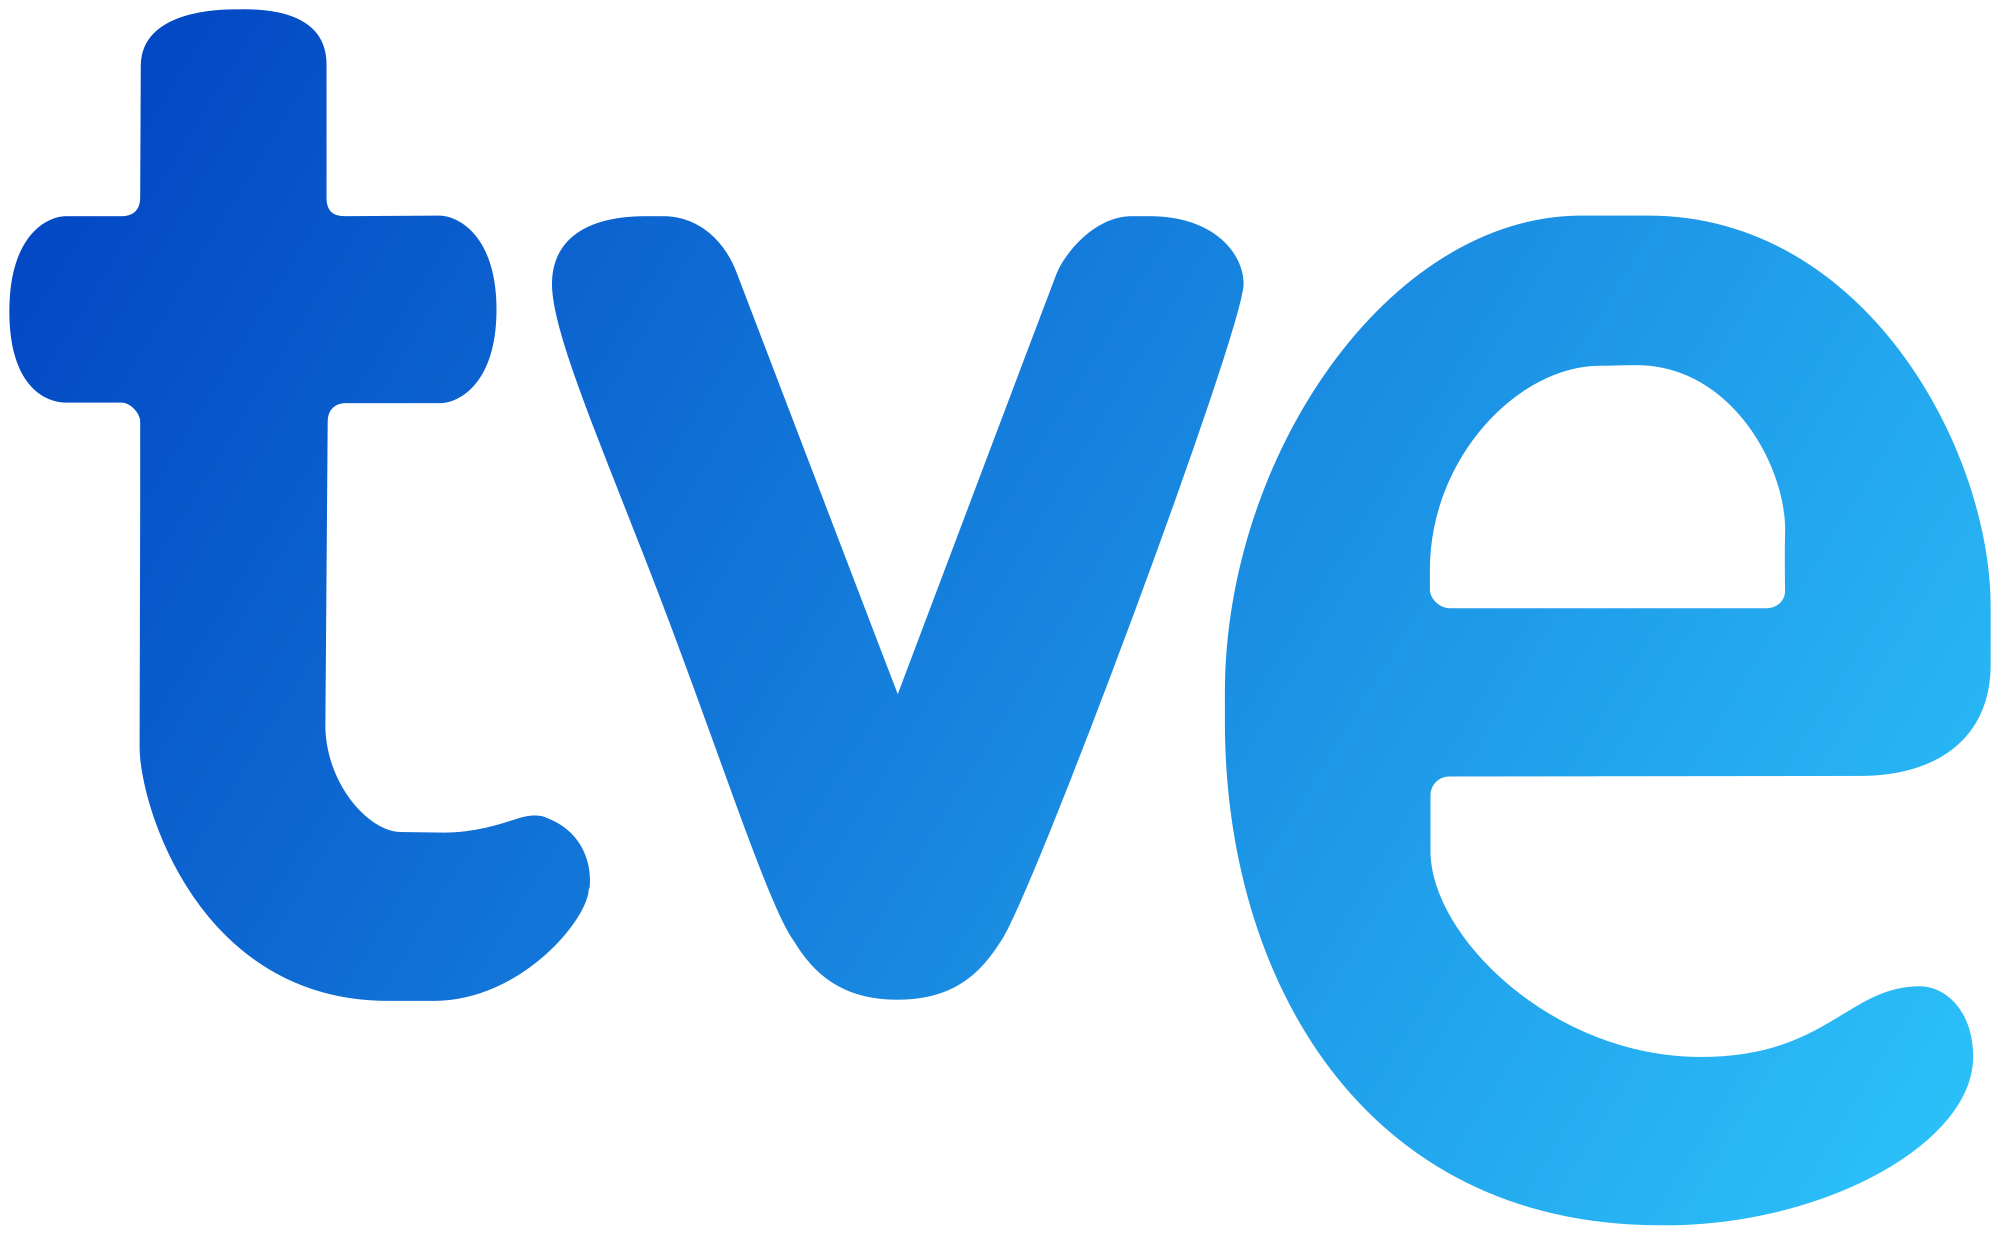 TVE - company